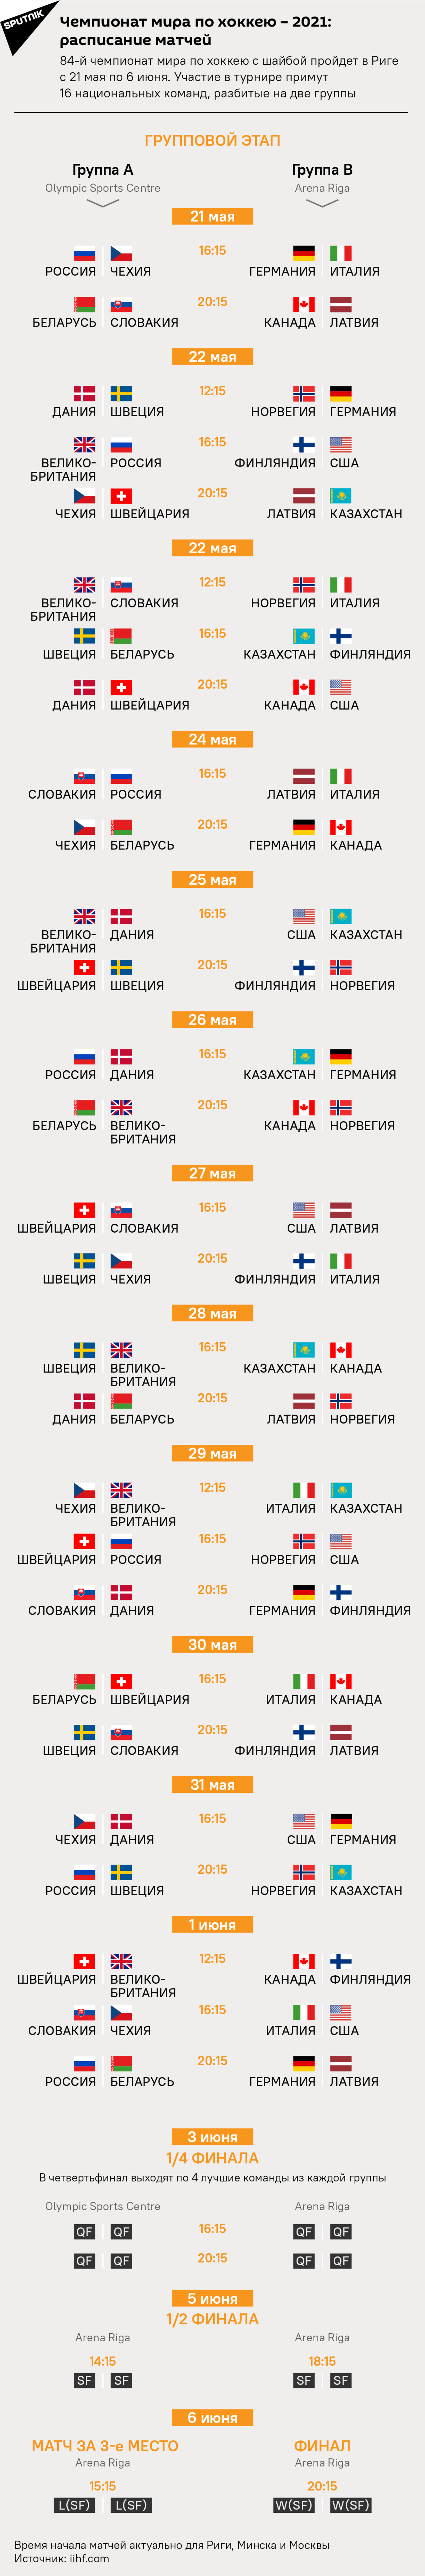 Расписание матчей чемпионата мира по хоккею – 2021 - Sputnik Беларусь, 1920, 14.05.2021